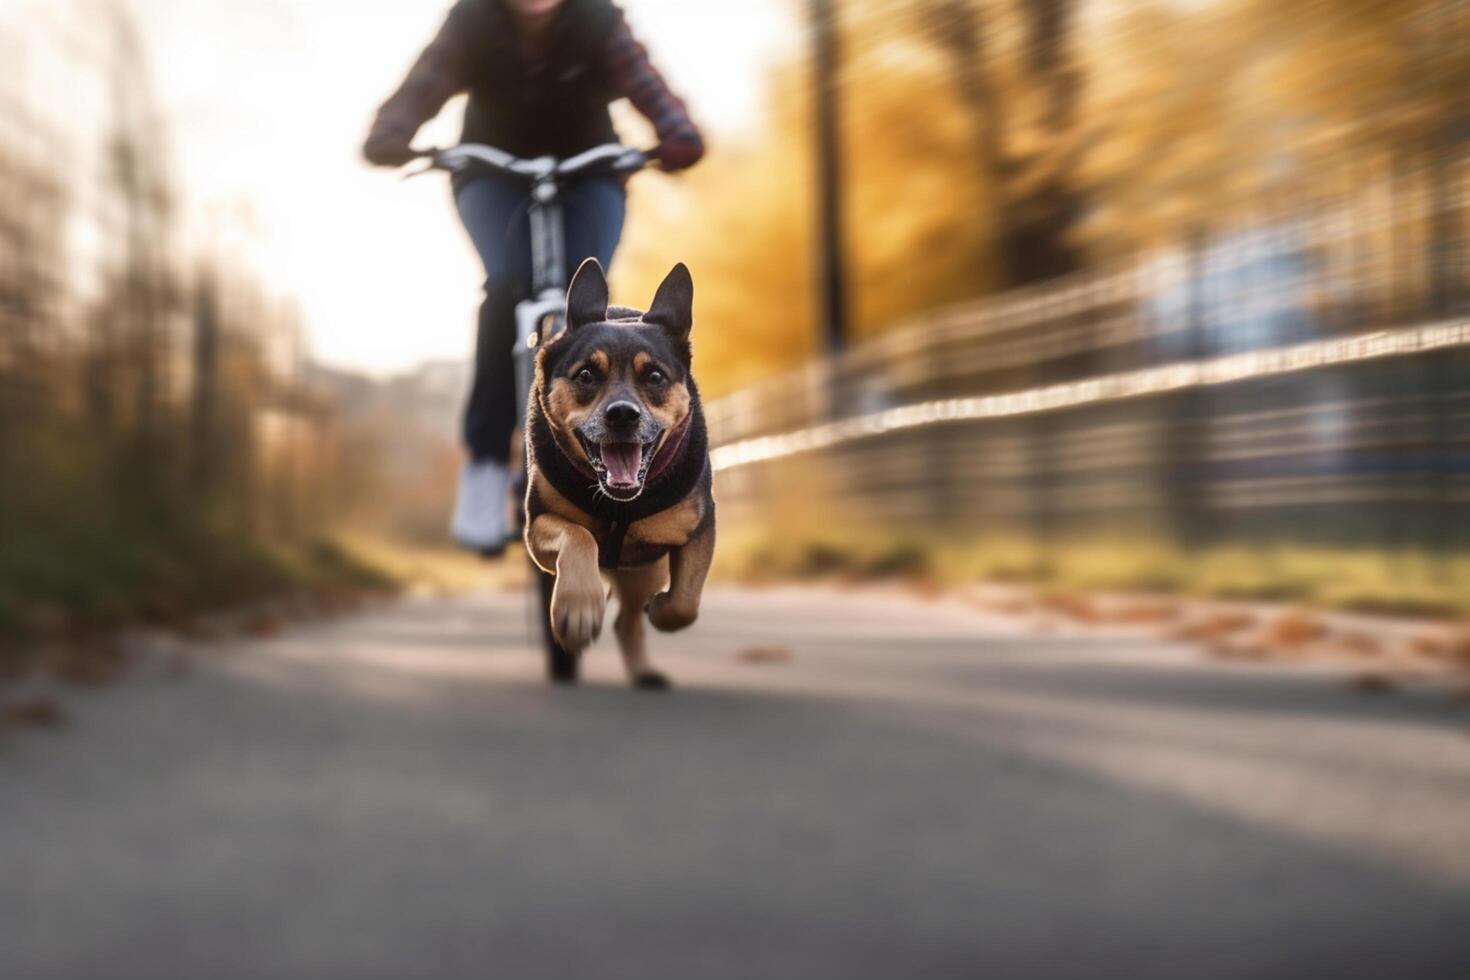 canin balade chien fonctionnement aux côtés de propriétaire sur bicyclette chemin dans ville ai généré photo